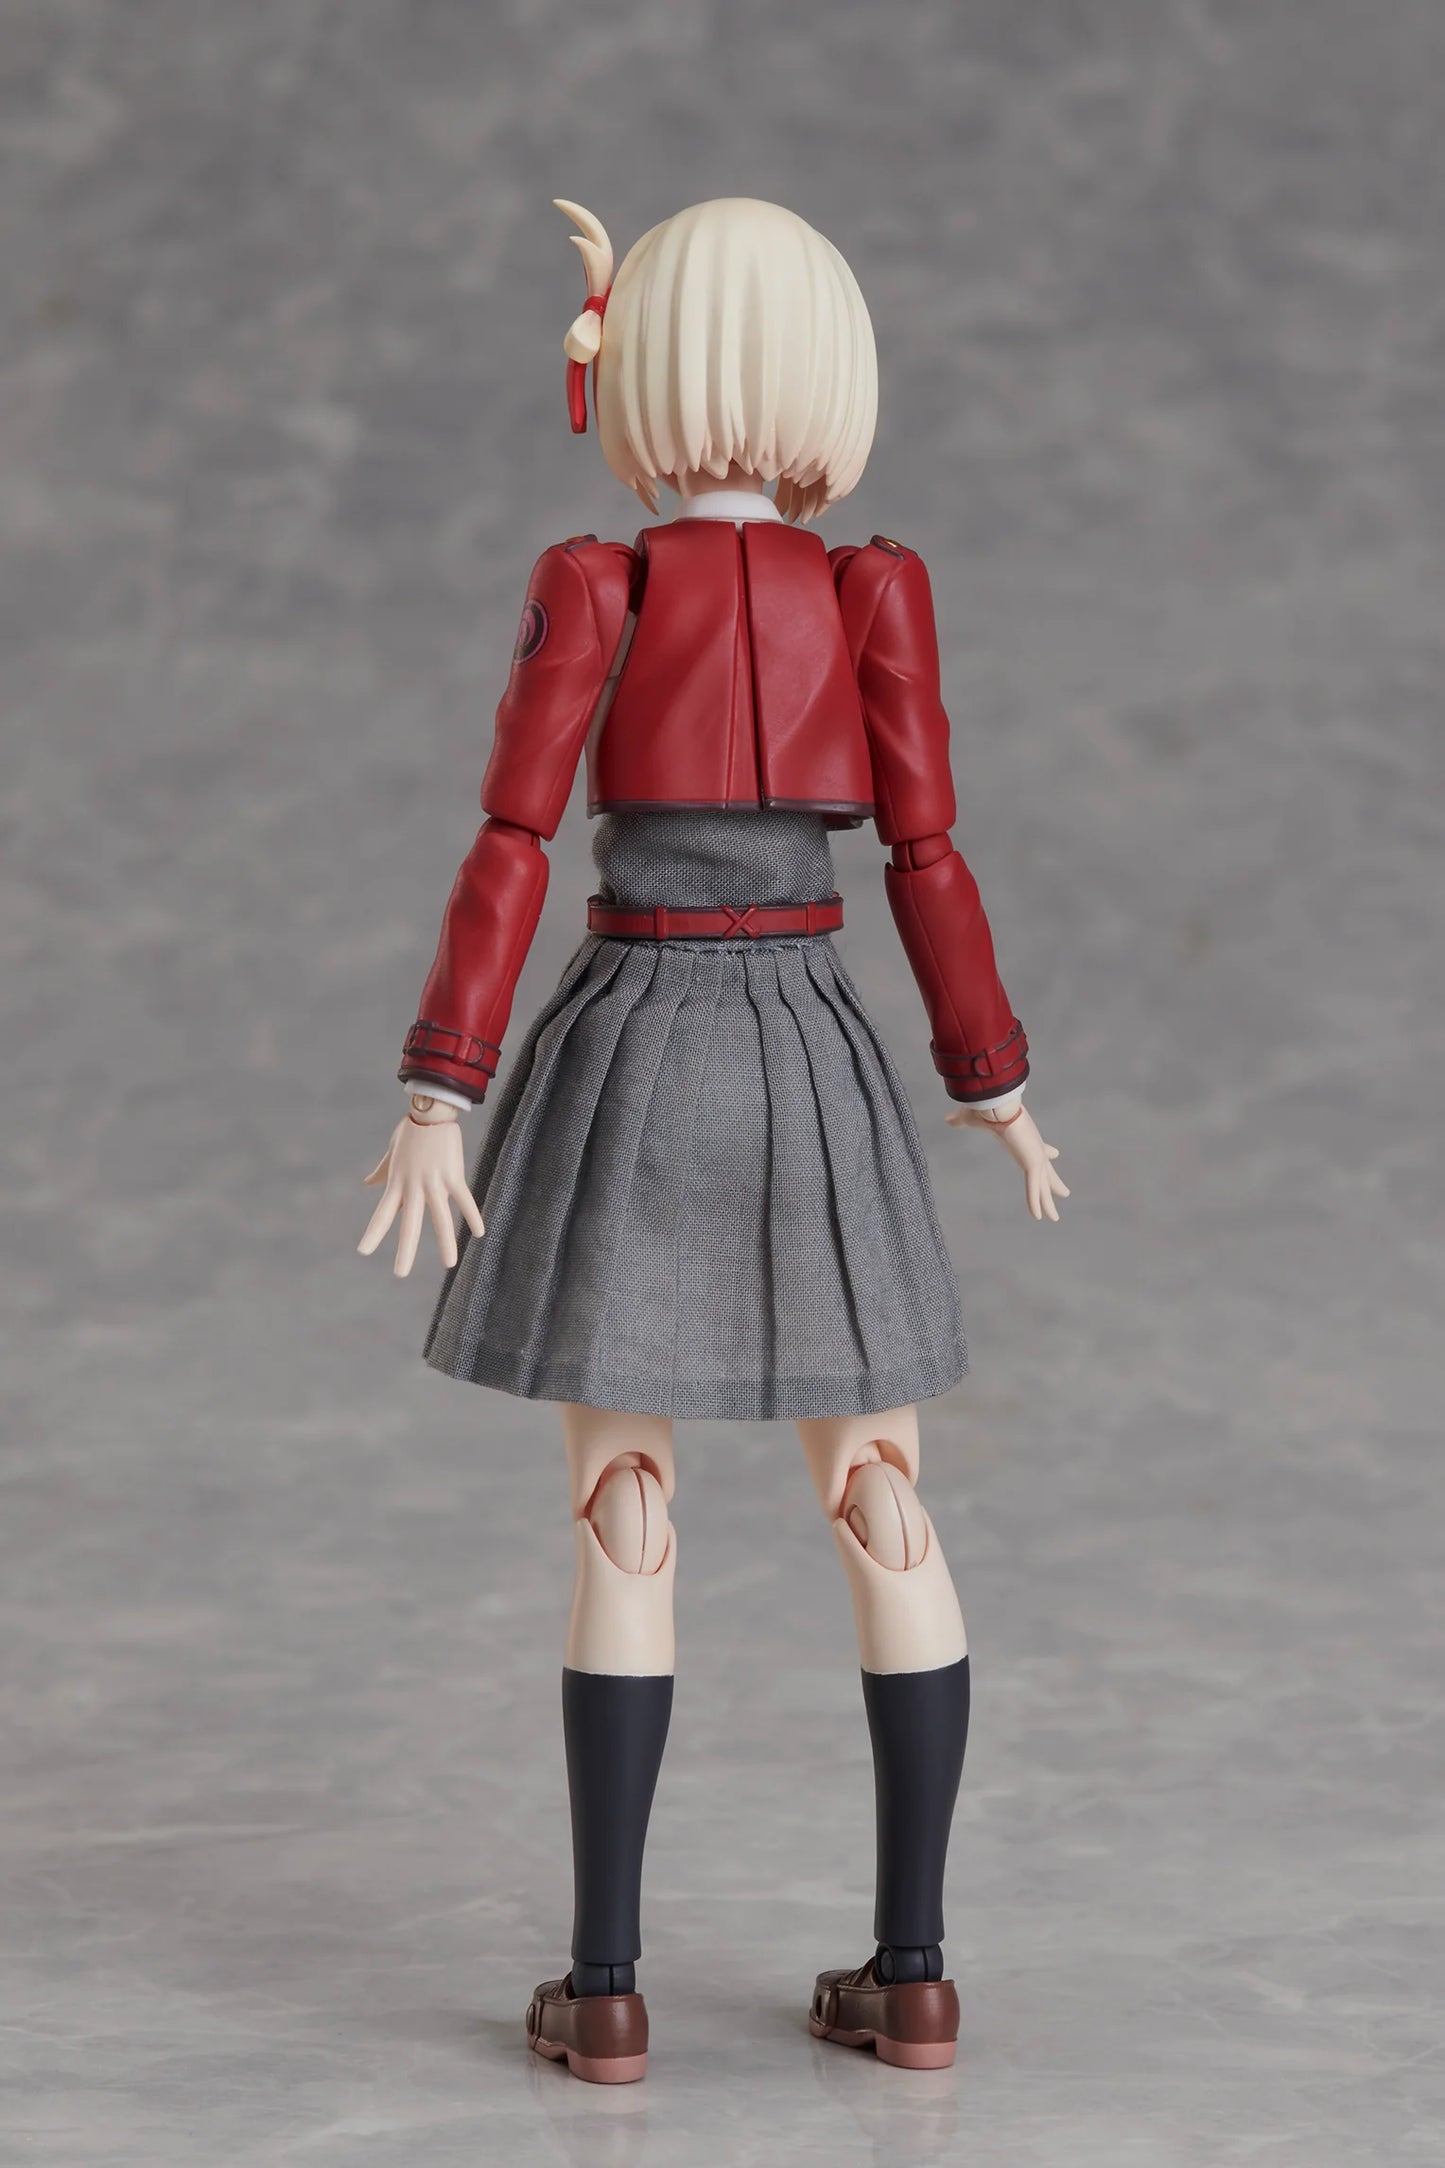 Aniplex Action Figure Buzzmod: Lycoris Recoil - Chisato Nishikigi Escala 1/12 Figura De Accion Preventa